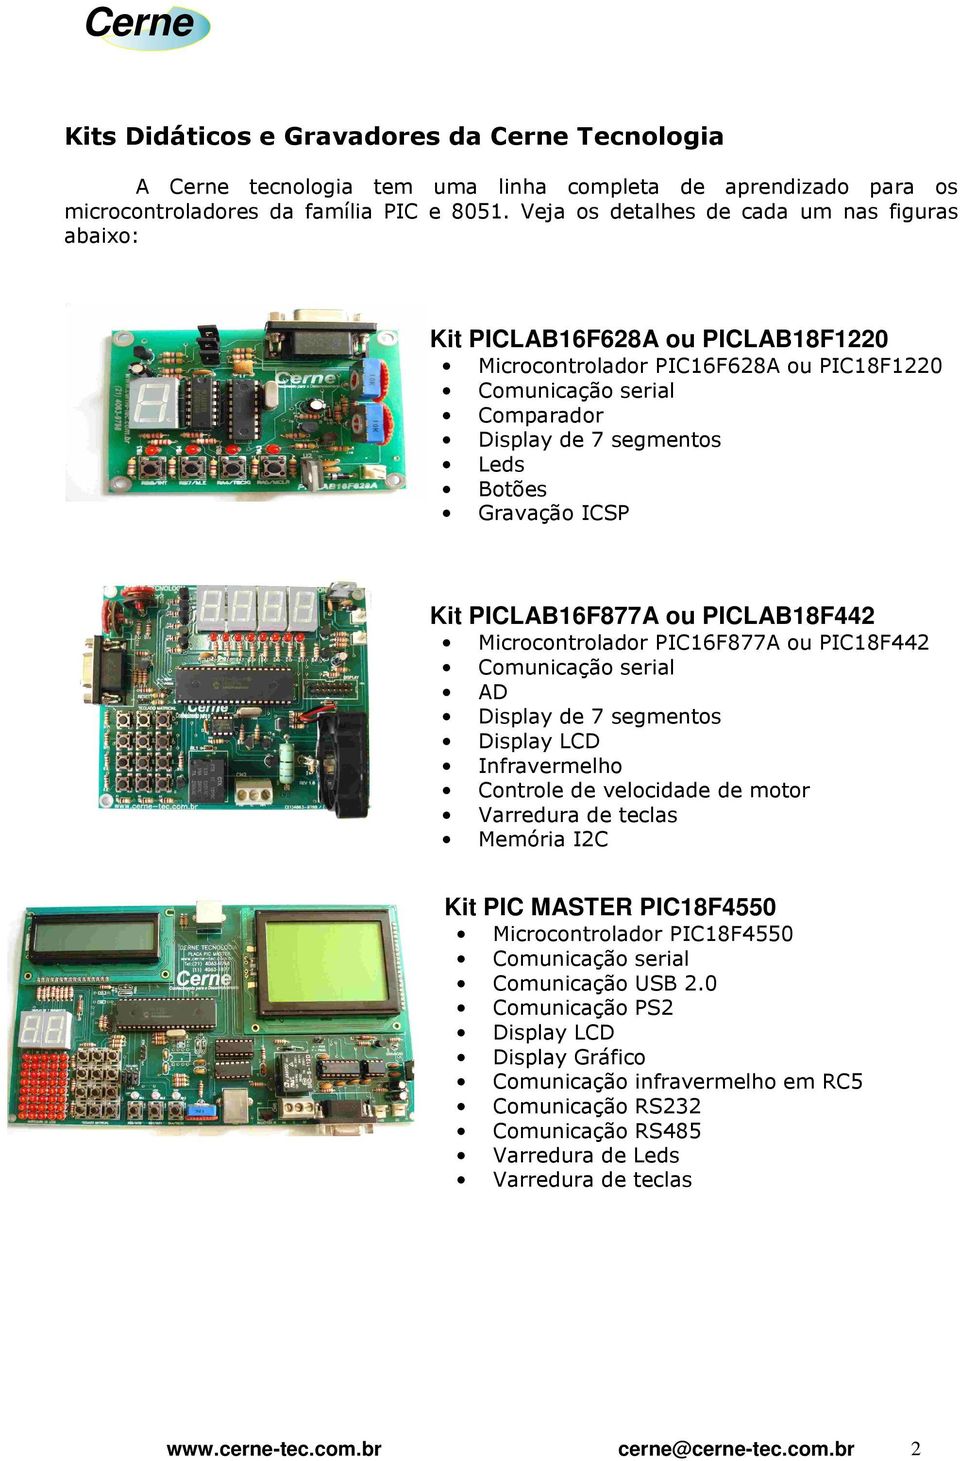 ICSP Kit PICLAB16F877A ou PICLAB18F442 Microcontrolador PIC16F877A ou PIC18F442 Comunicação serial AD Display de 7 segmentos Display LCD Infravermelho Controle de velocidade de motor Varredura de